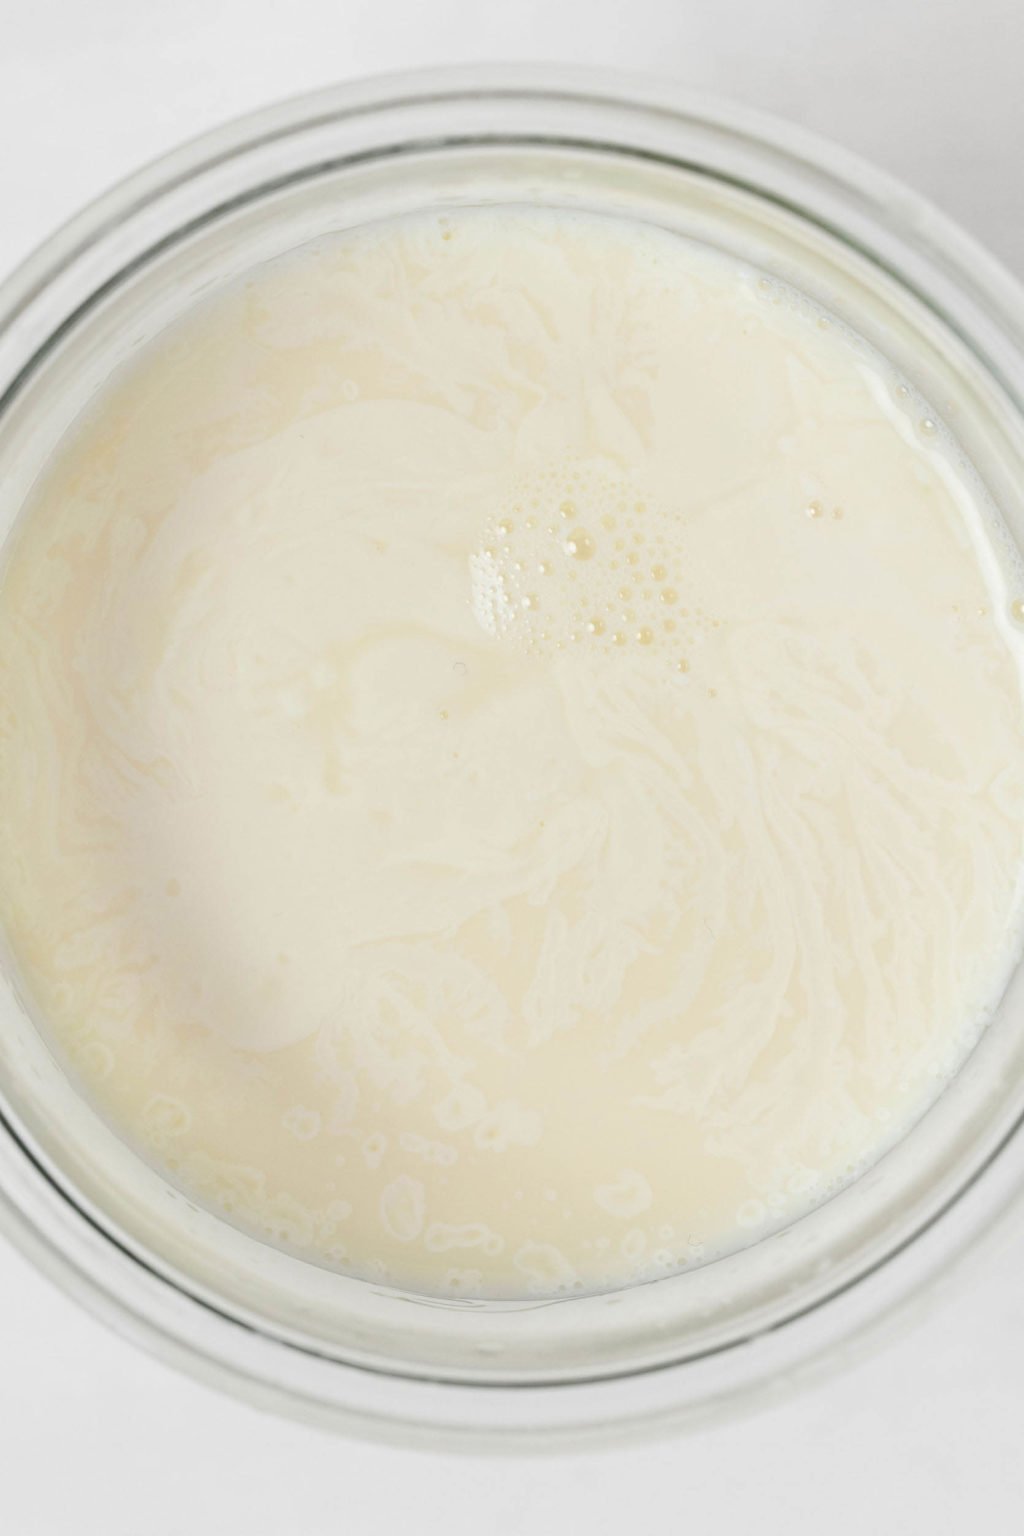 Μια εικόνα από πάνω από το γάλα σε ένα γυάλινο μπολ.